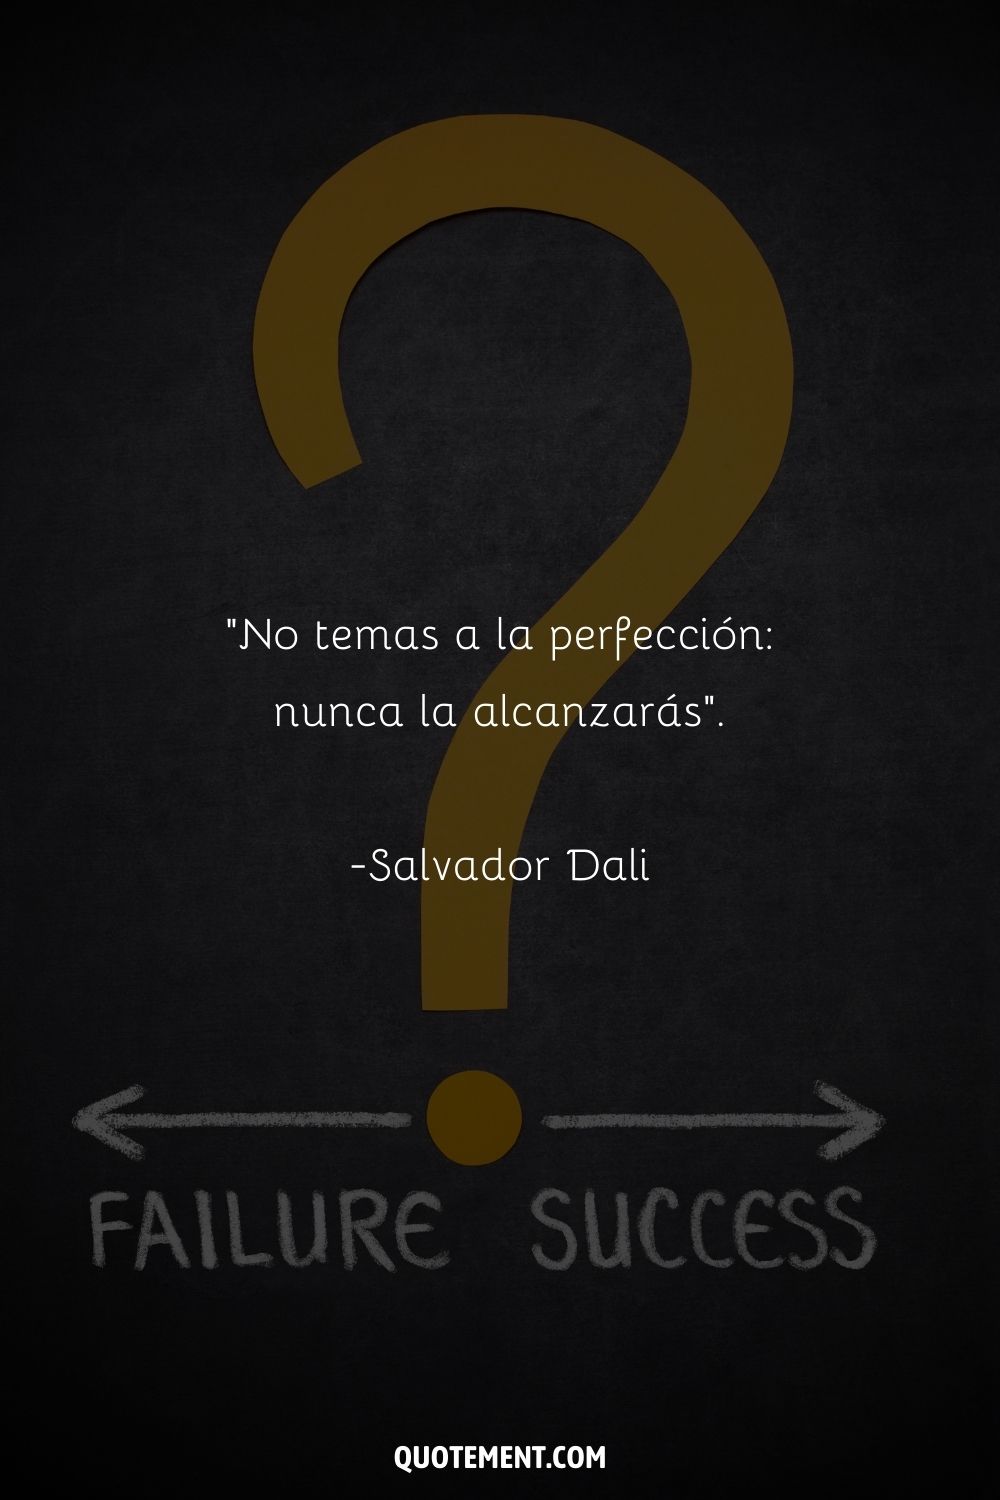 "No temas a la perfección: nunca la alcanzarás". - Salvador Dalí